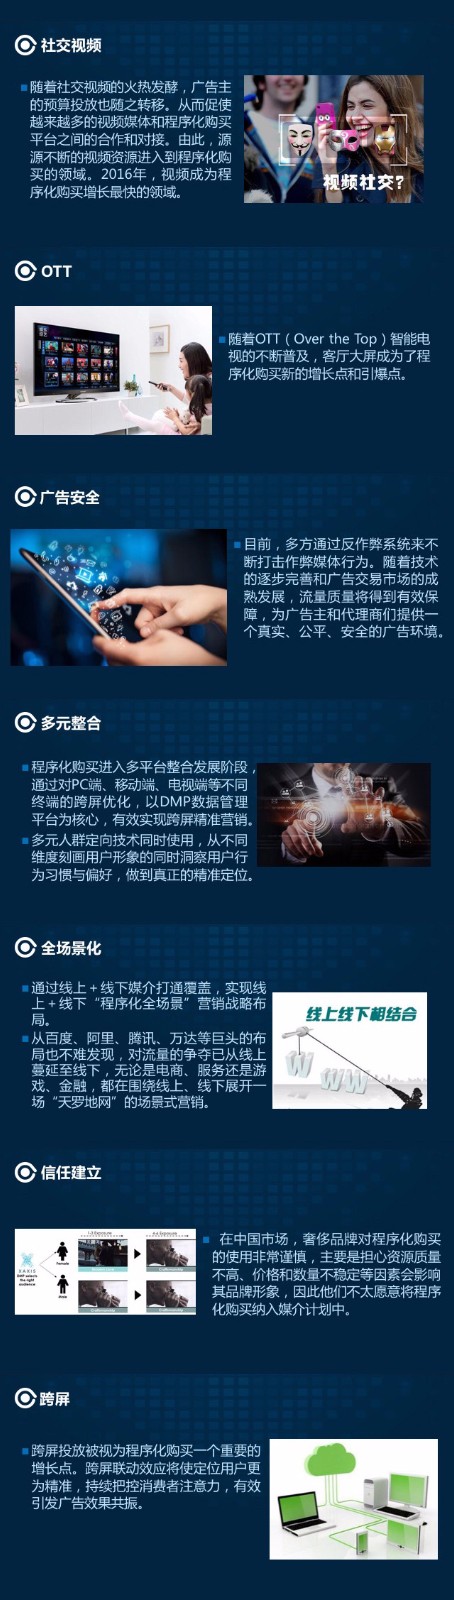 2016中国程序化购买盘点报告